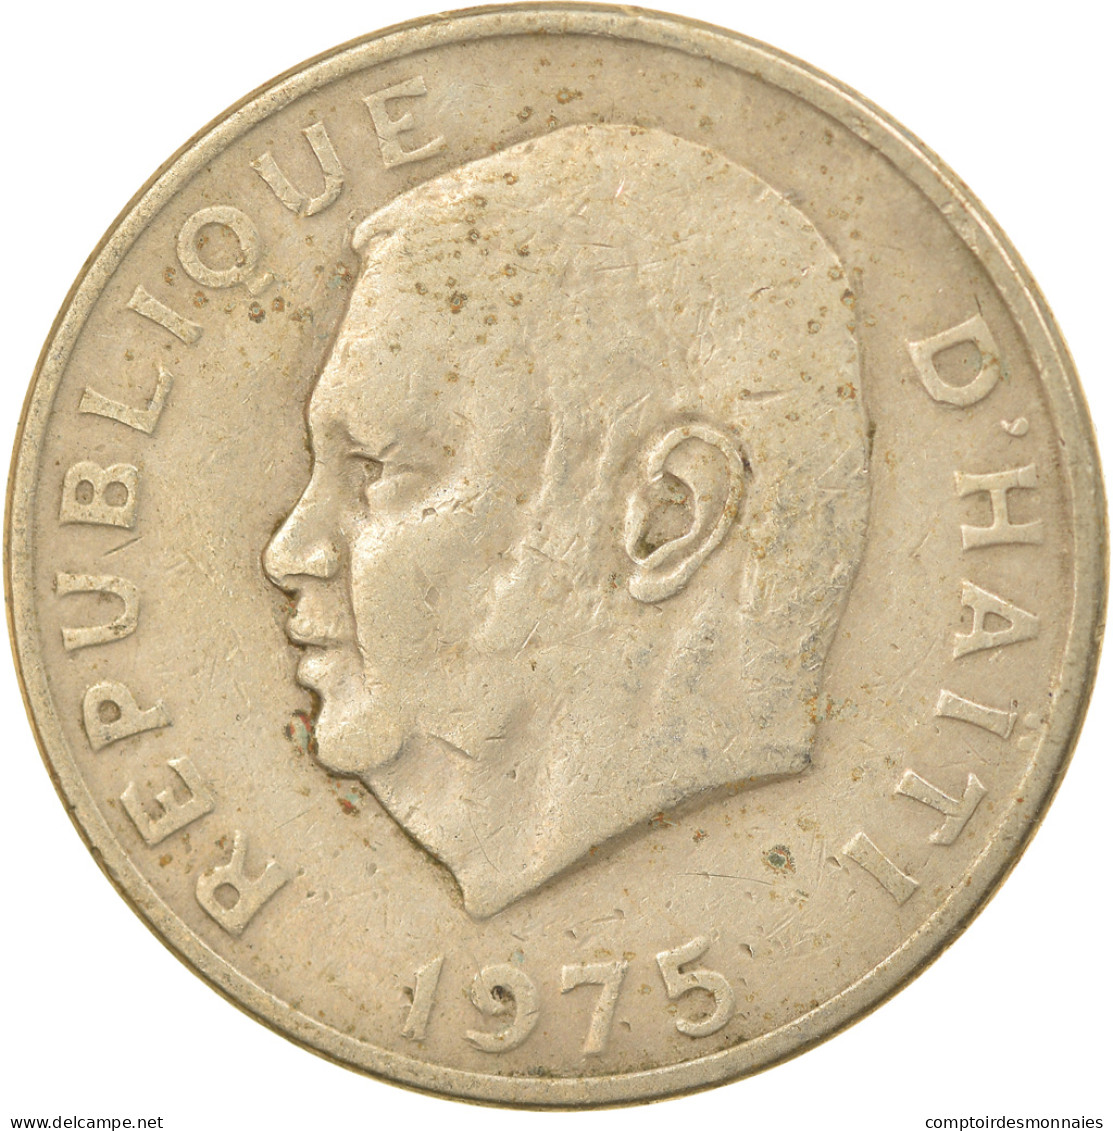 Monnaie, Haïti, 10 Centimes, 1975, TTB, Copper-nickel, KM:120 - Haïti